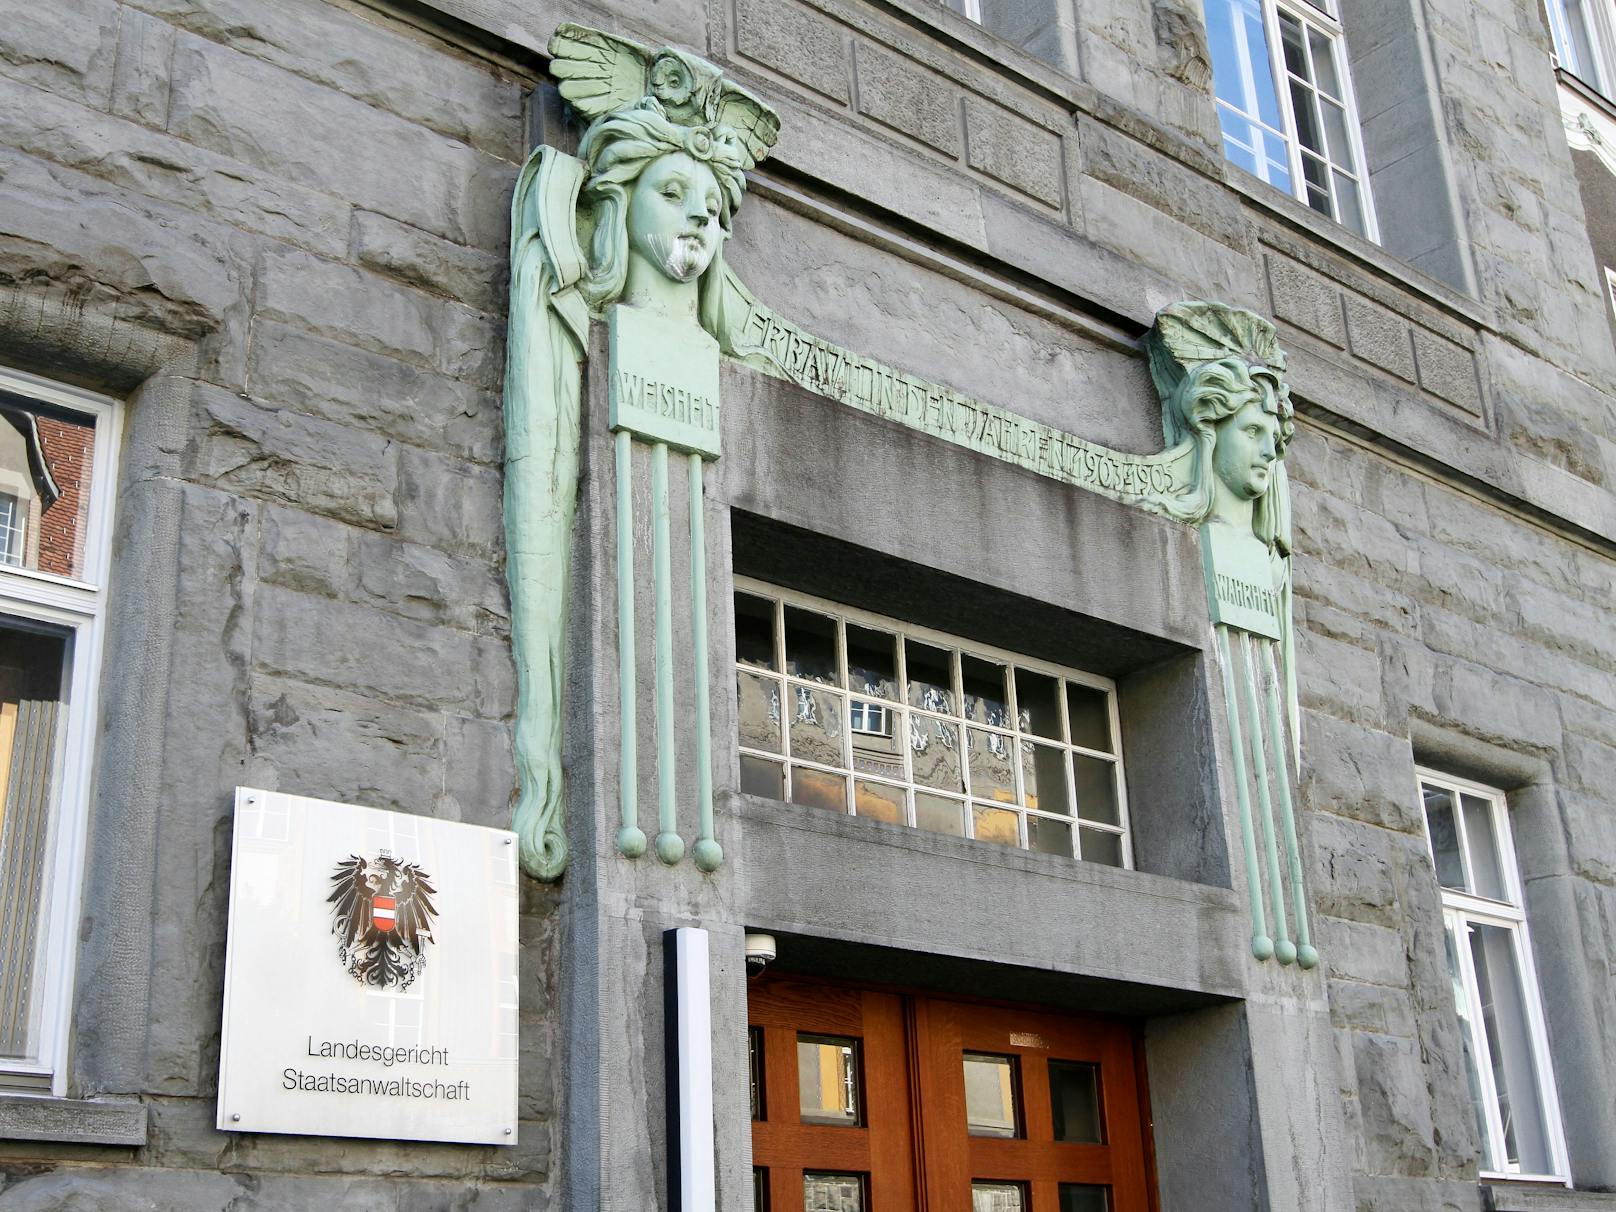 Landesgericht und Staatsanwaltschaft in Feldkirch (Archivfoto)